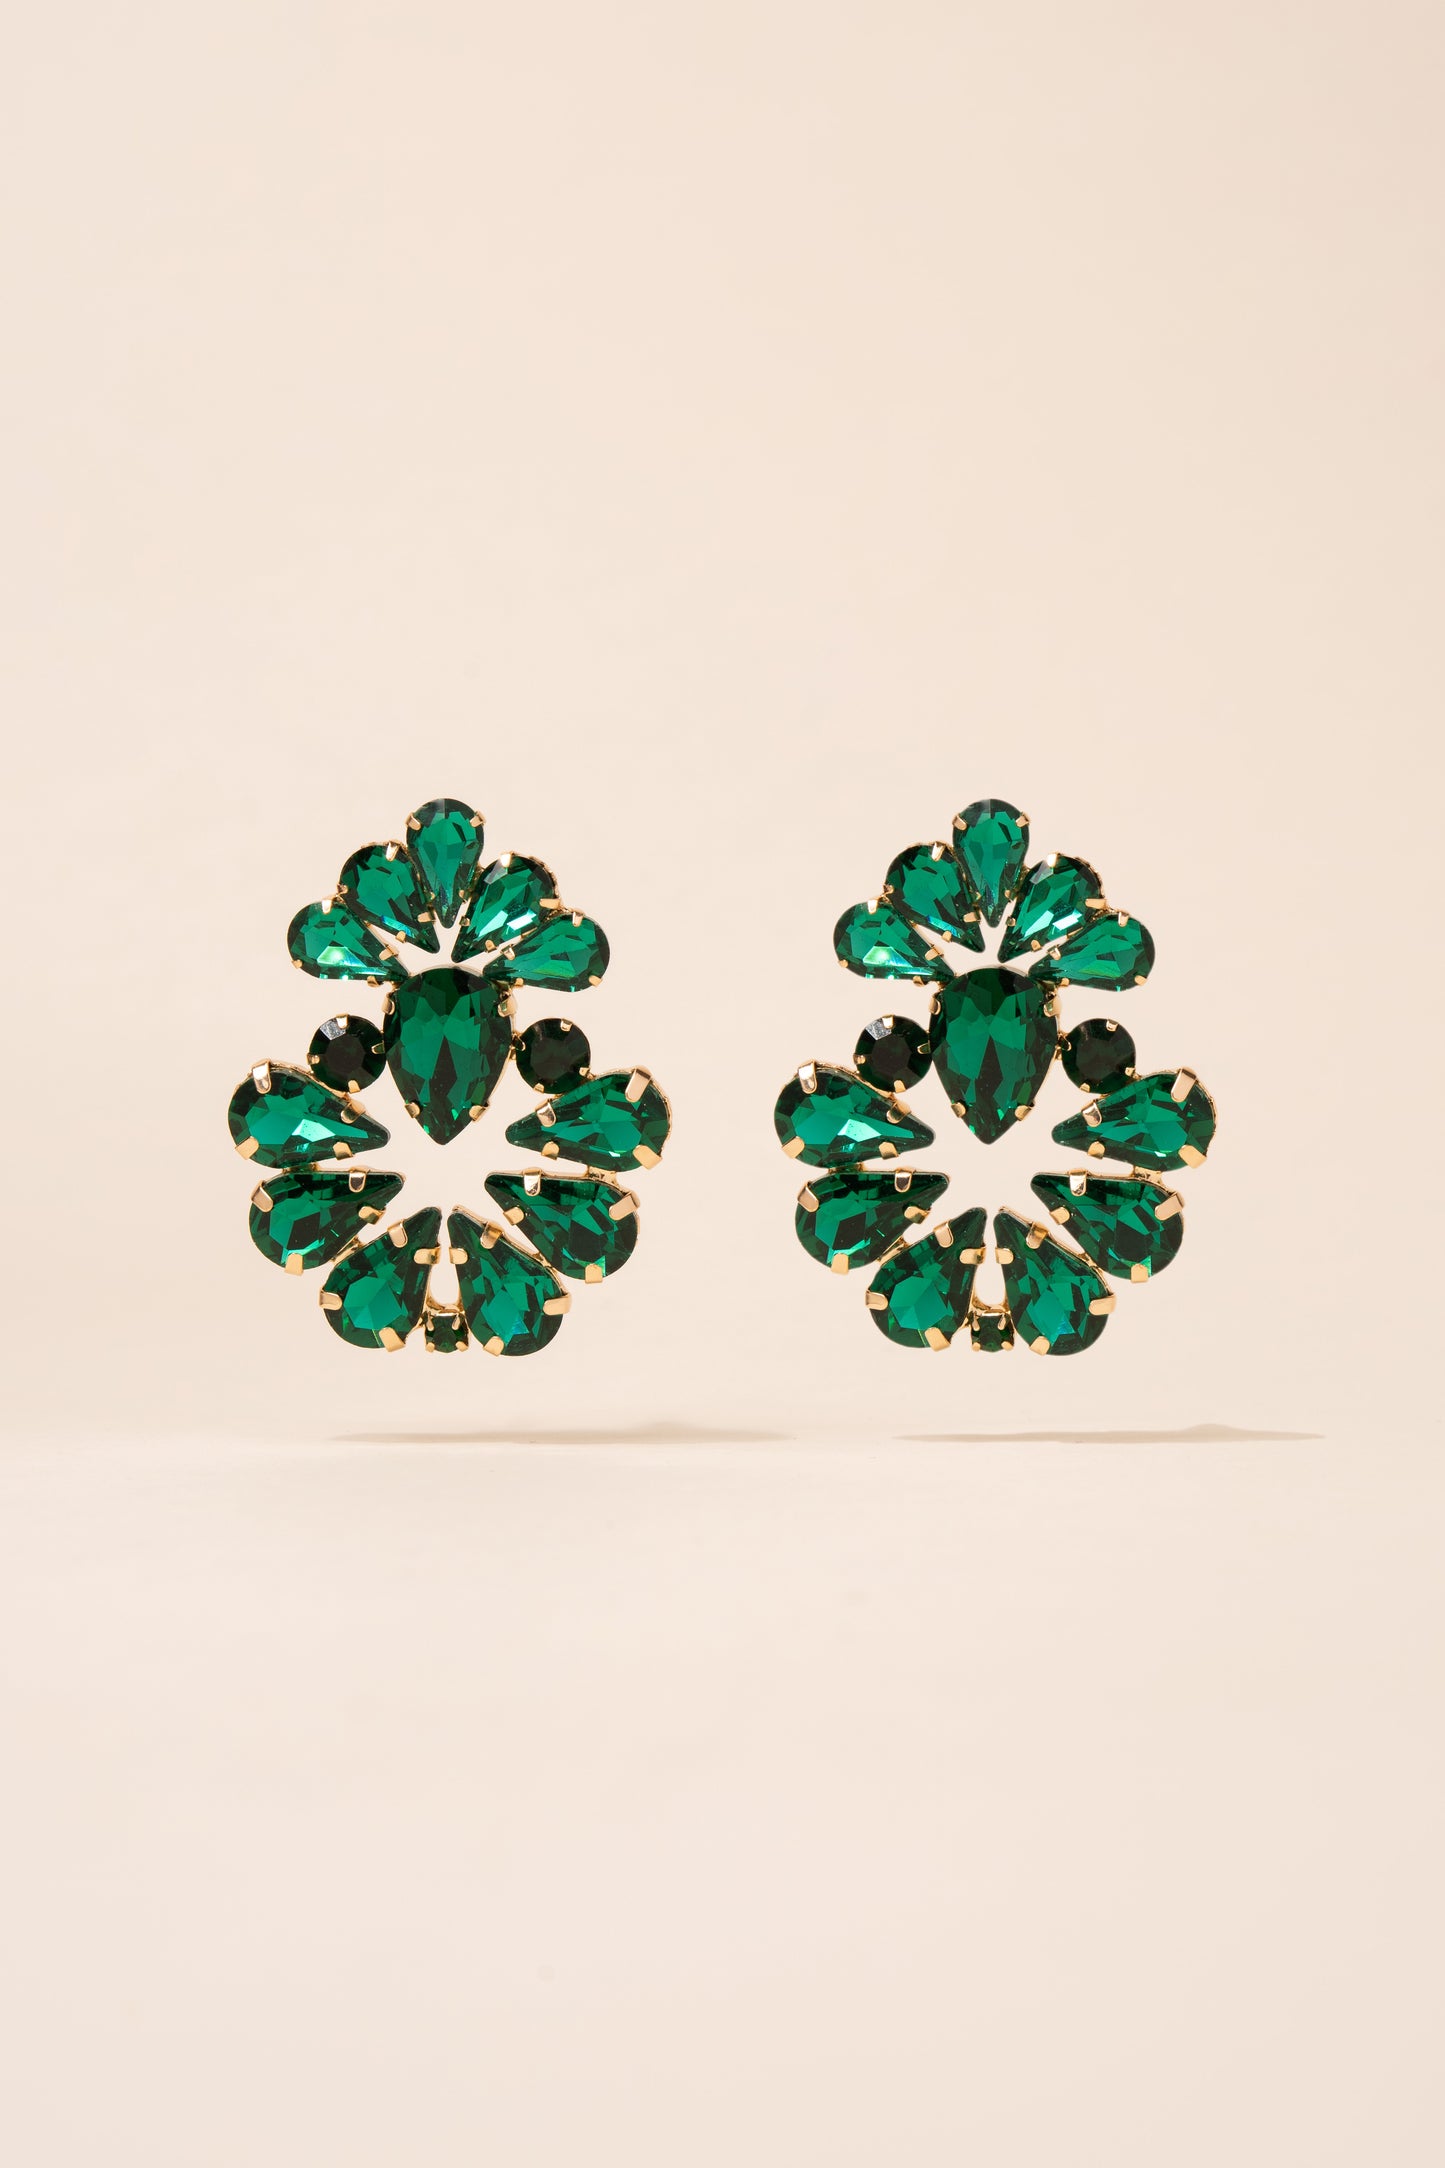 Valerie Floral Rhinestone Earrings - Green